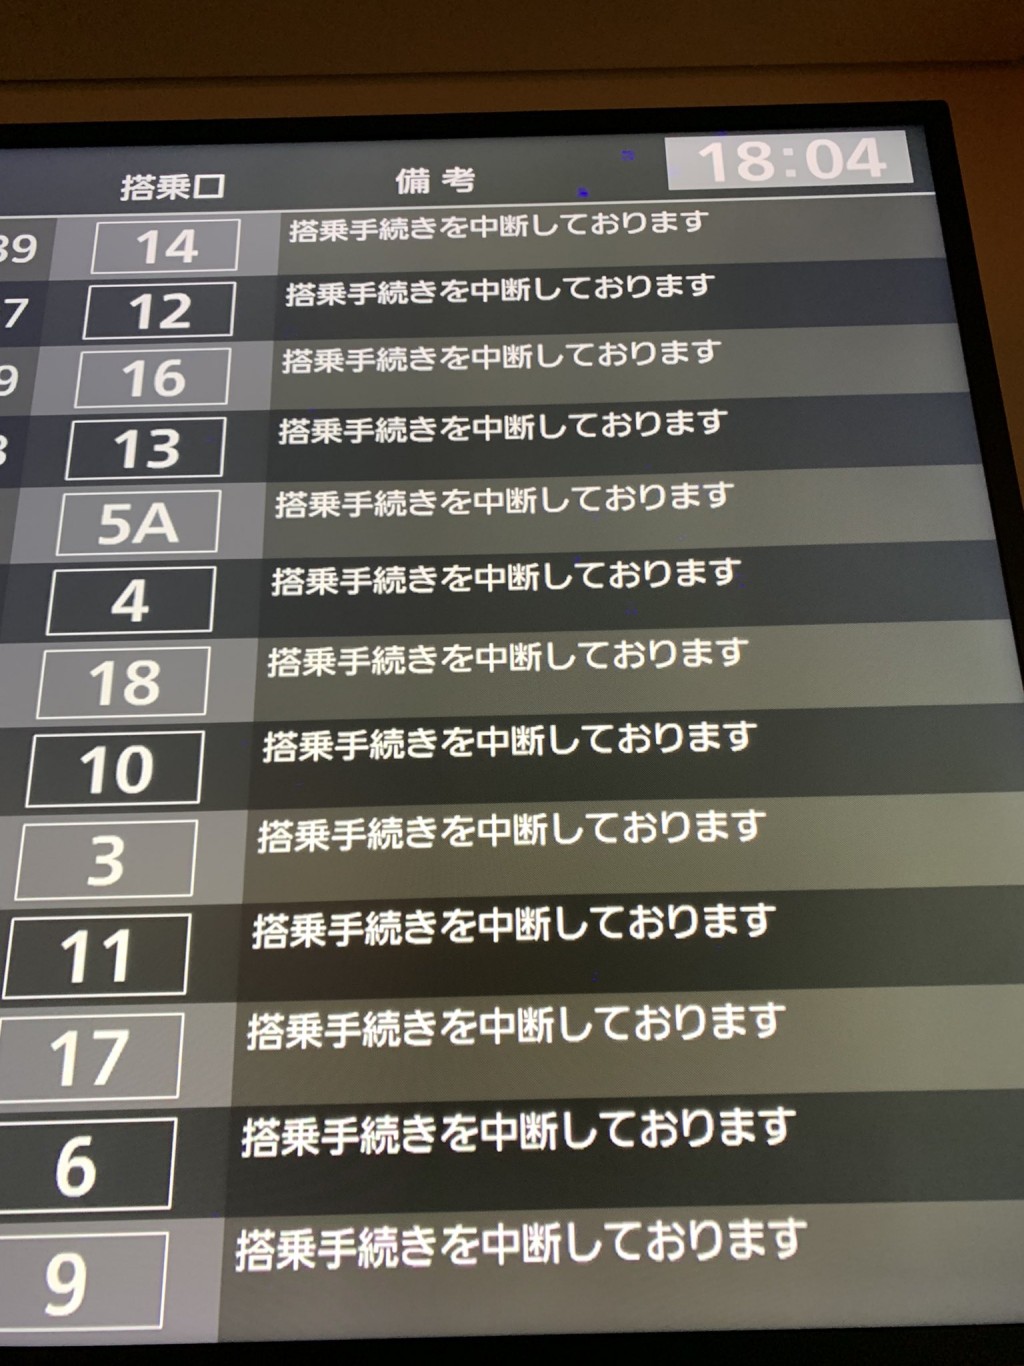 羽田機場一度全面停飛。 X